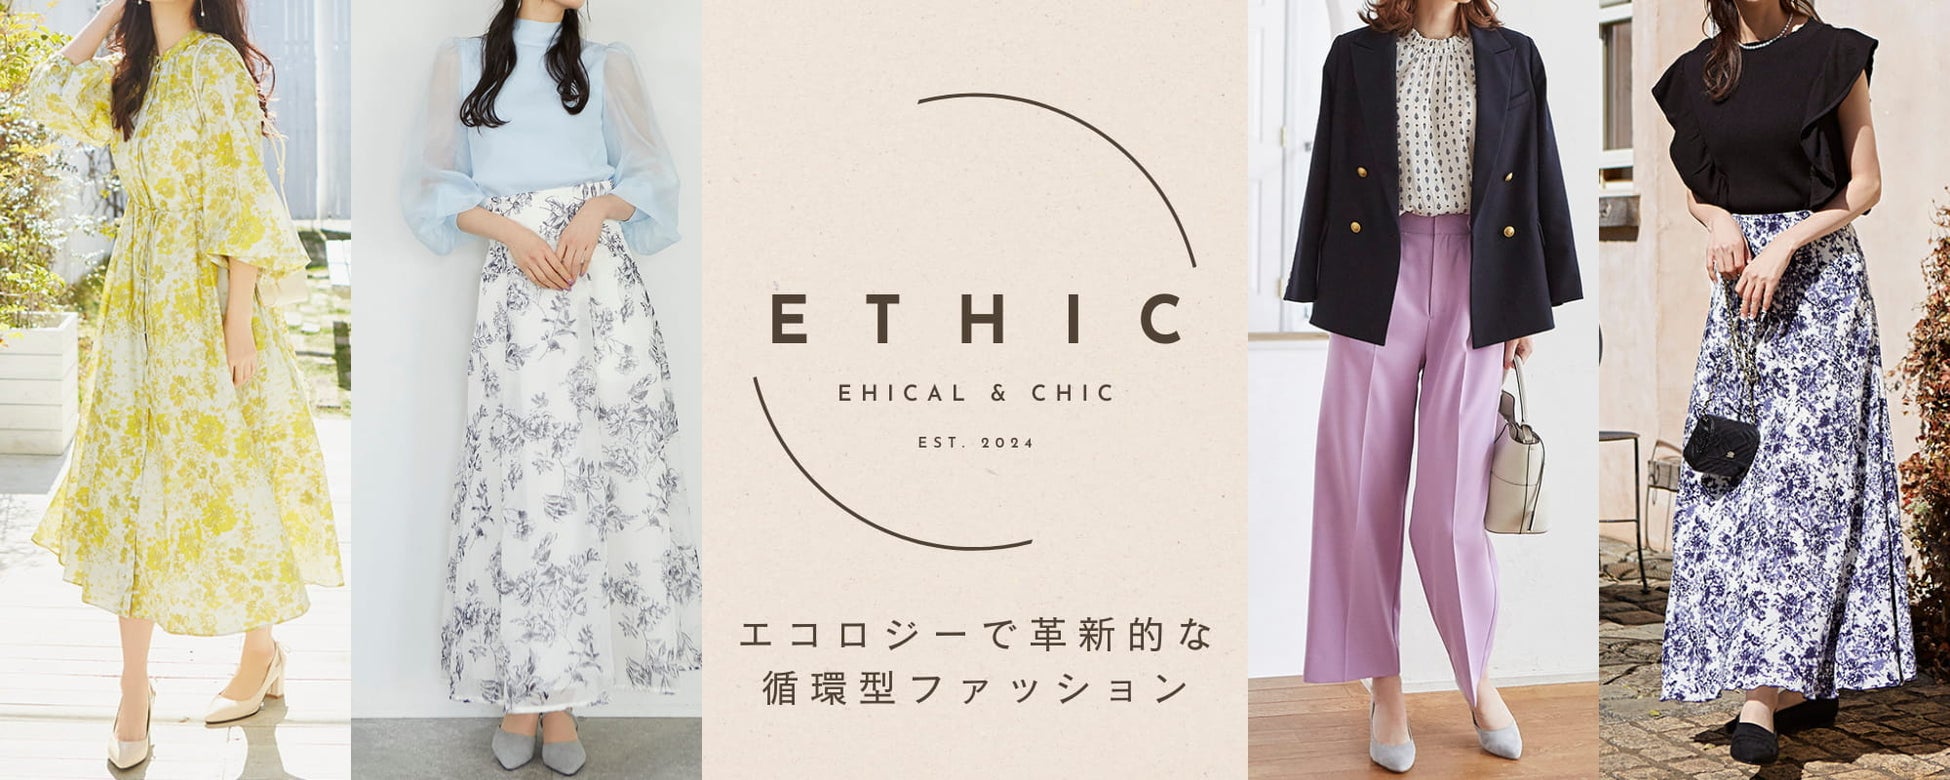 エシカルファッションのRcawaii.から30代後半、40代、50代向けのスタイリングSHOP『ETHIC(エシック)』が誕生...